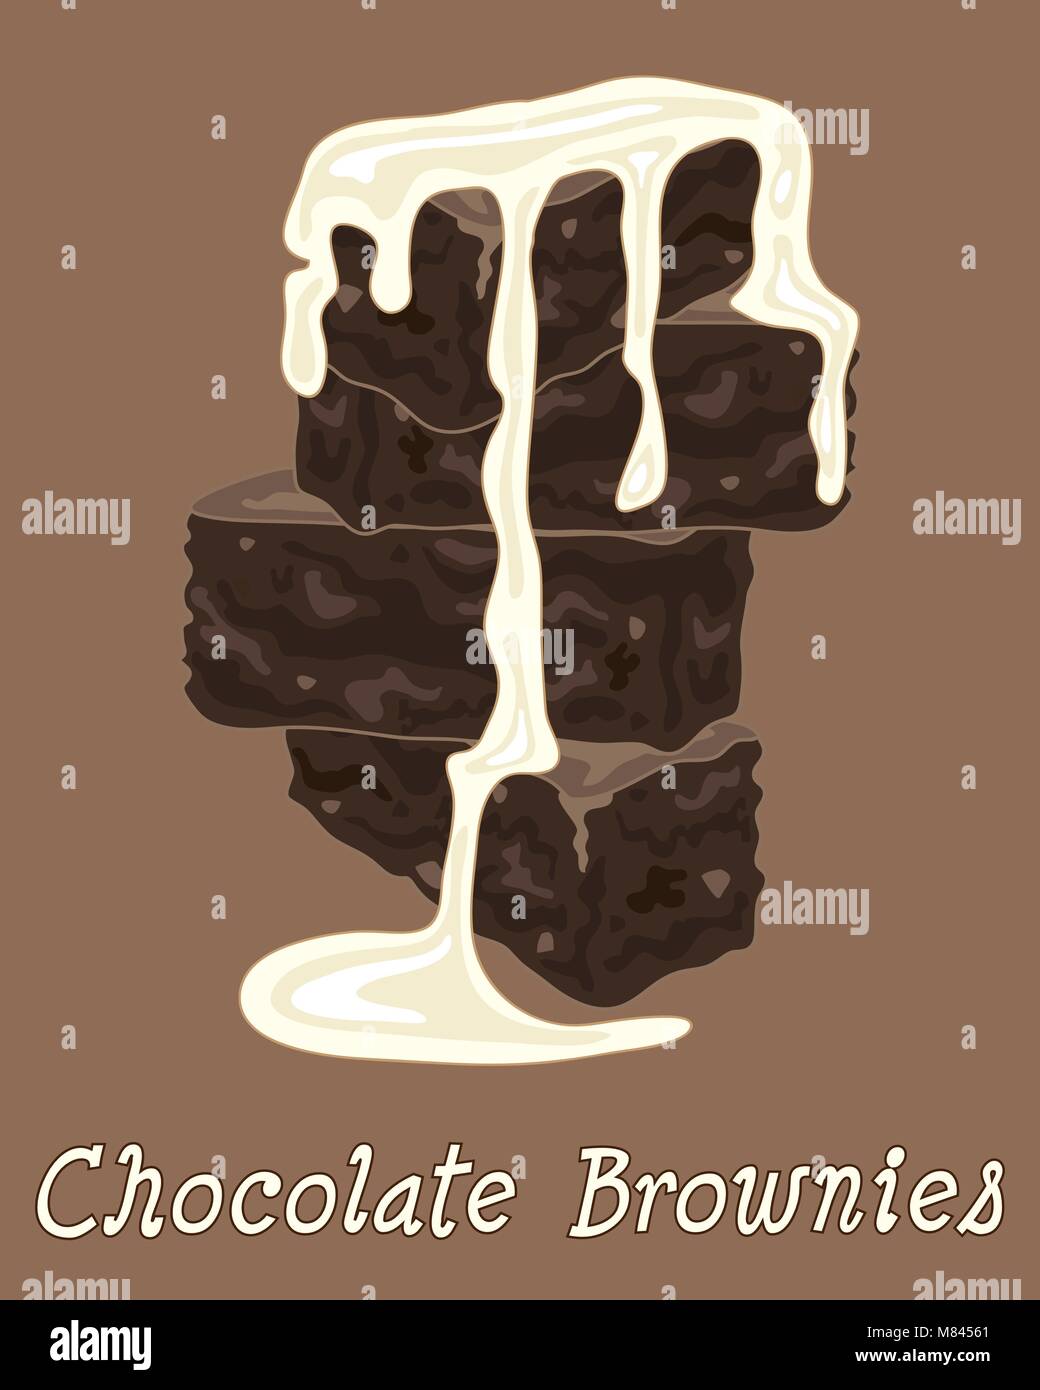 Un vecteur illustration au format eps d'une pile de brownies au chocolat avec de la crème sur un fond brun Illustration de Vecteur